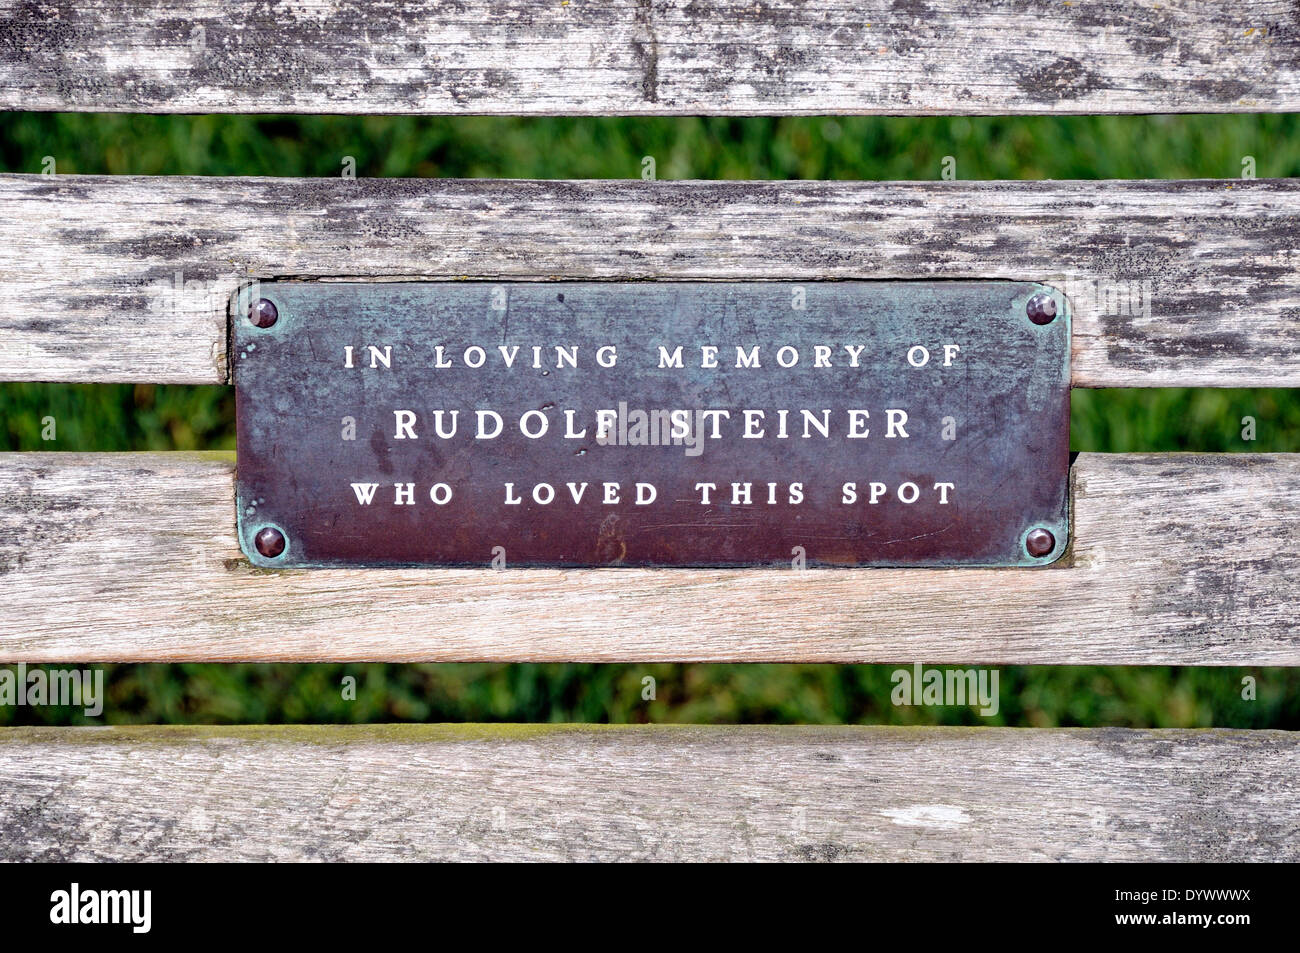 Placca su una panchina nel parco in memoria di Rudolf Steiner che amava questo spot Foto Stock